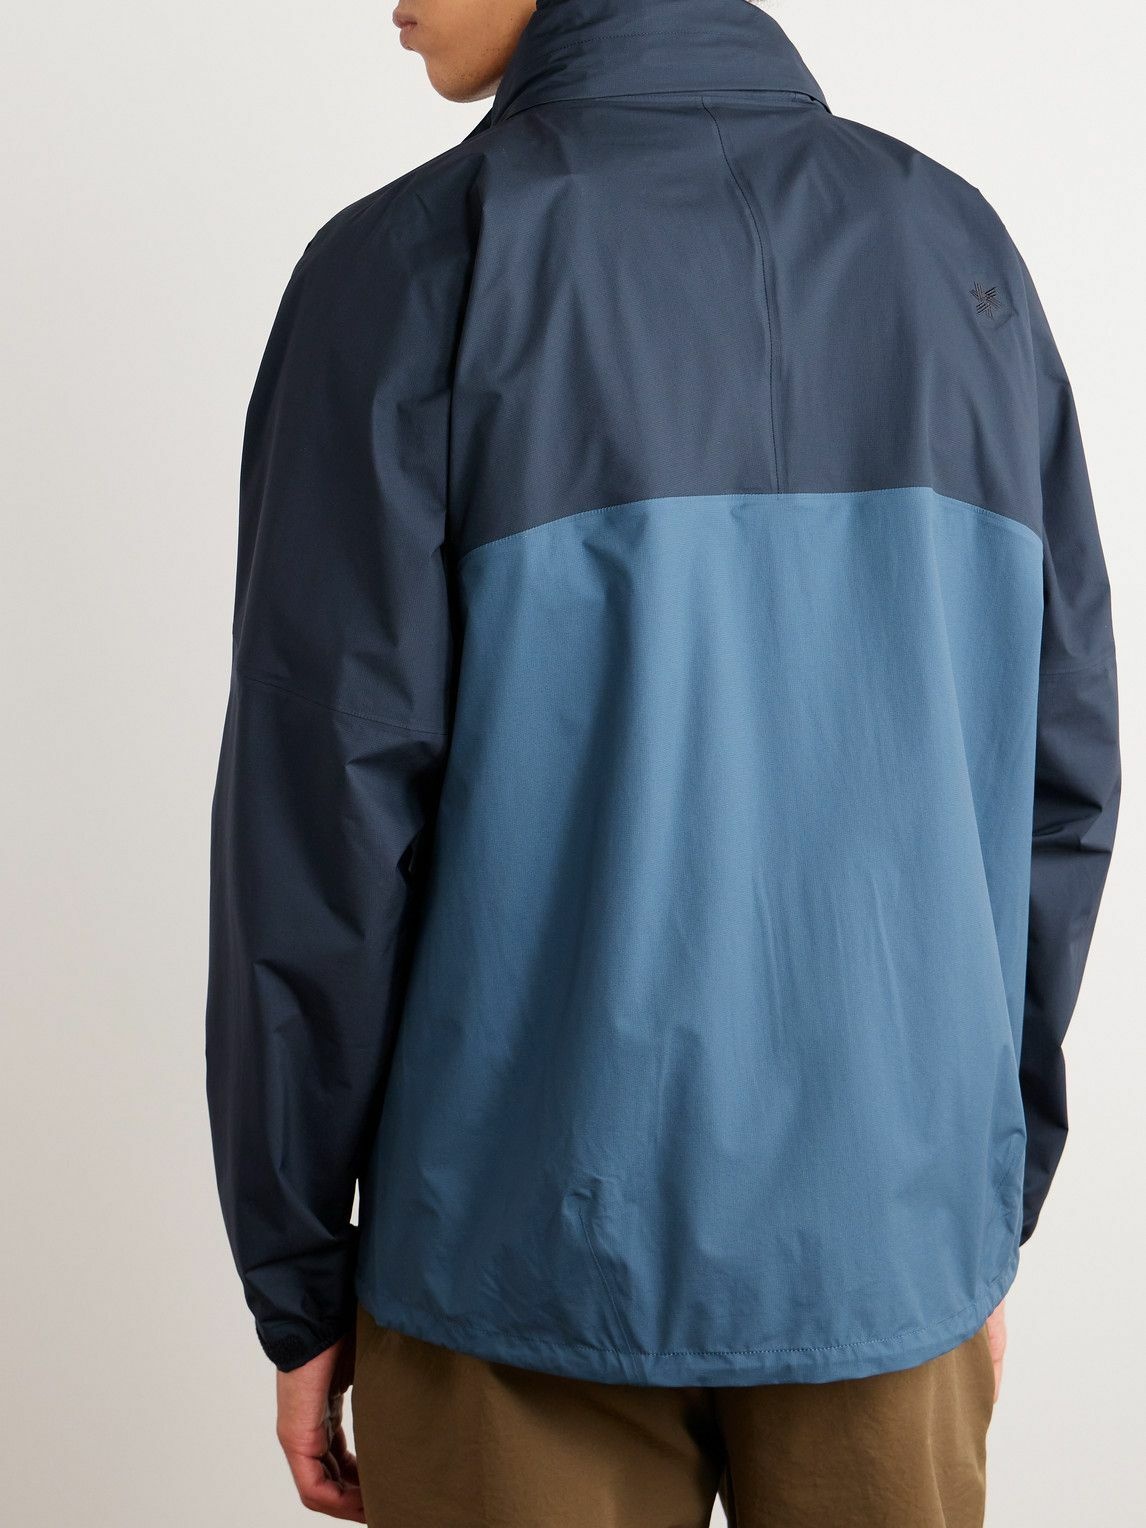 Goldwin - Two-Tone Pertex Shieldair Ripstop Jacket - Blue Goldwin